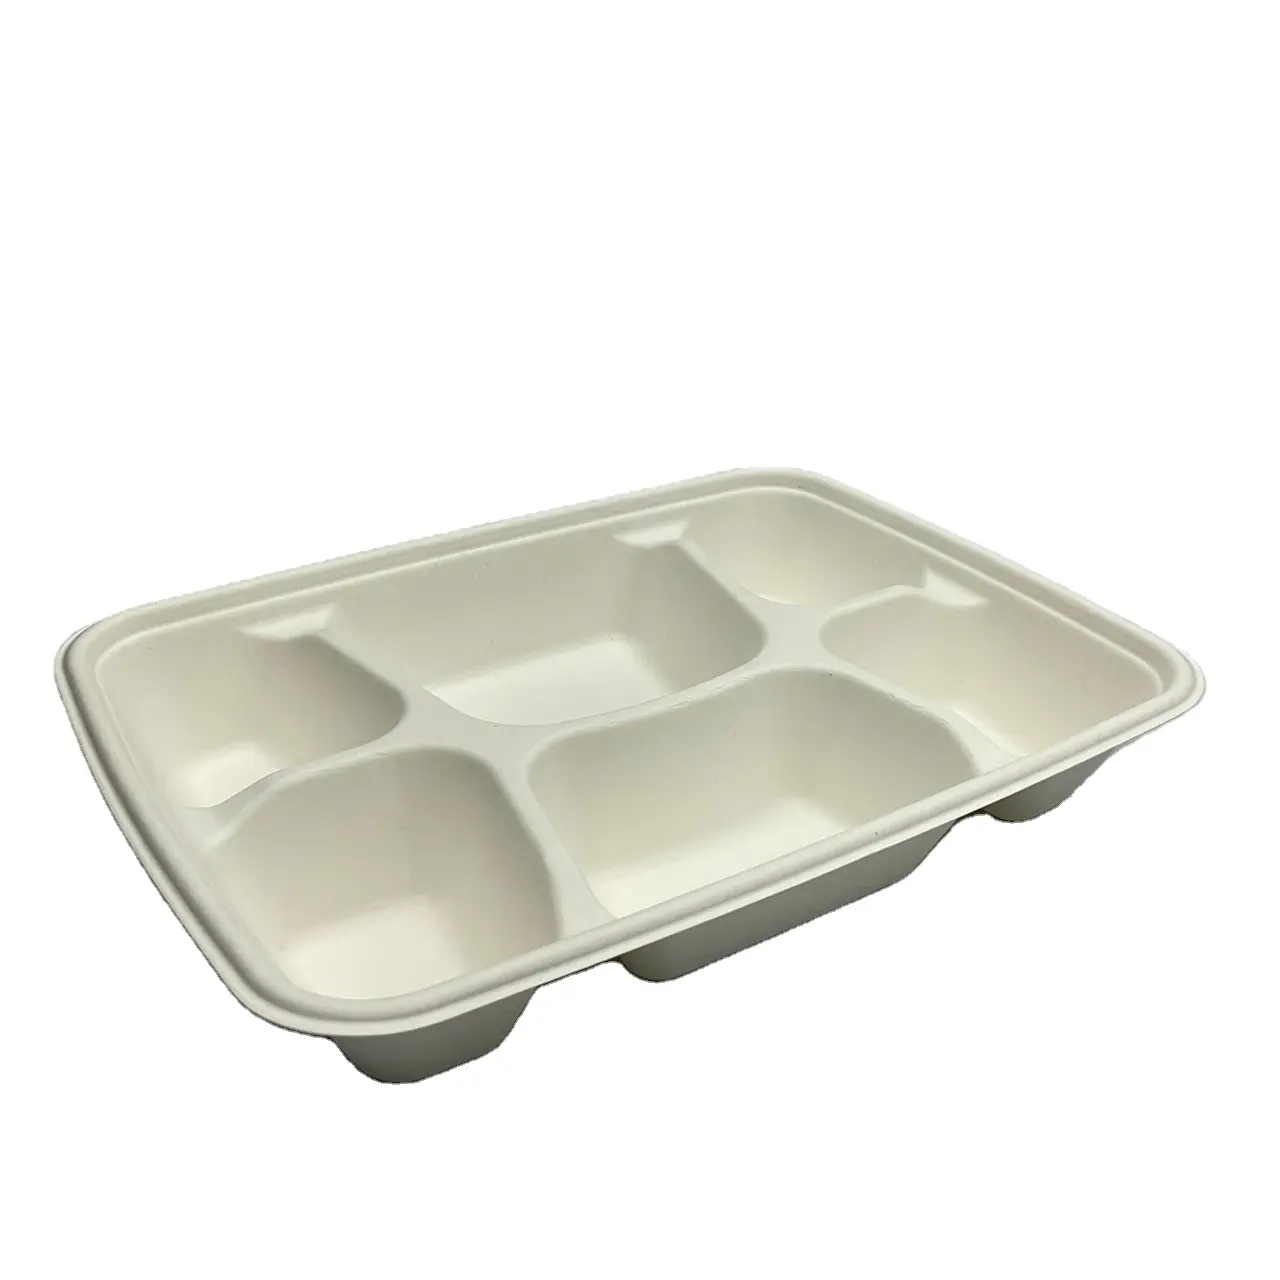 Pasta de papel descartável personalizável para comida, caixa com 6 compartimentos, de qualidade alimentar, para pacotes de almoço escolar, para serviços de alimentação